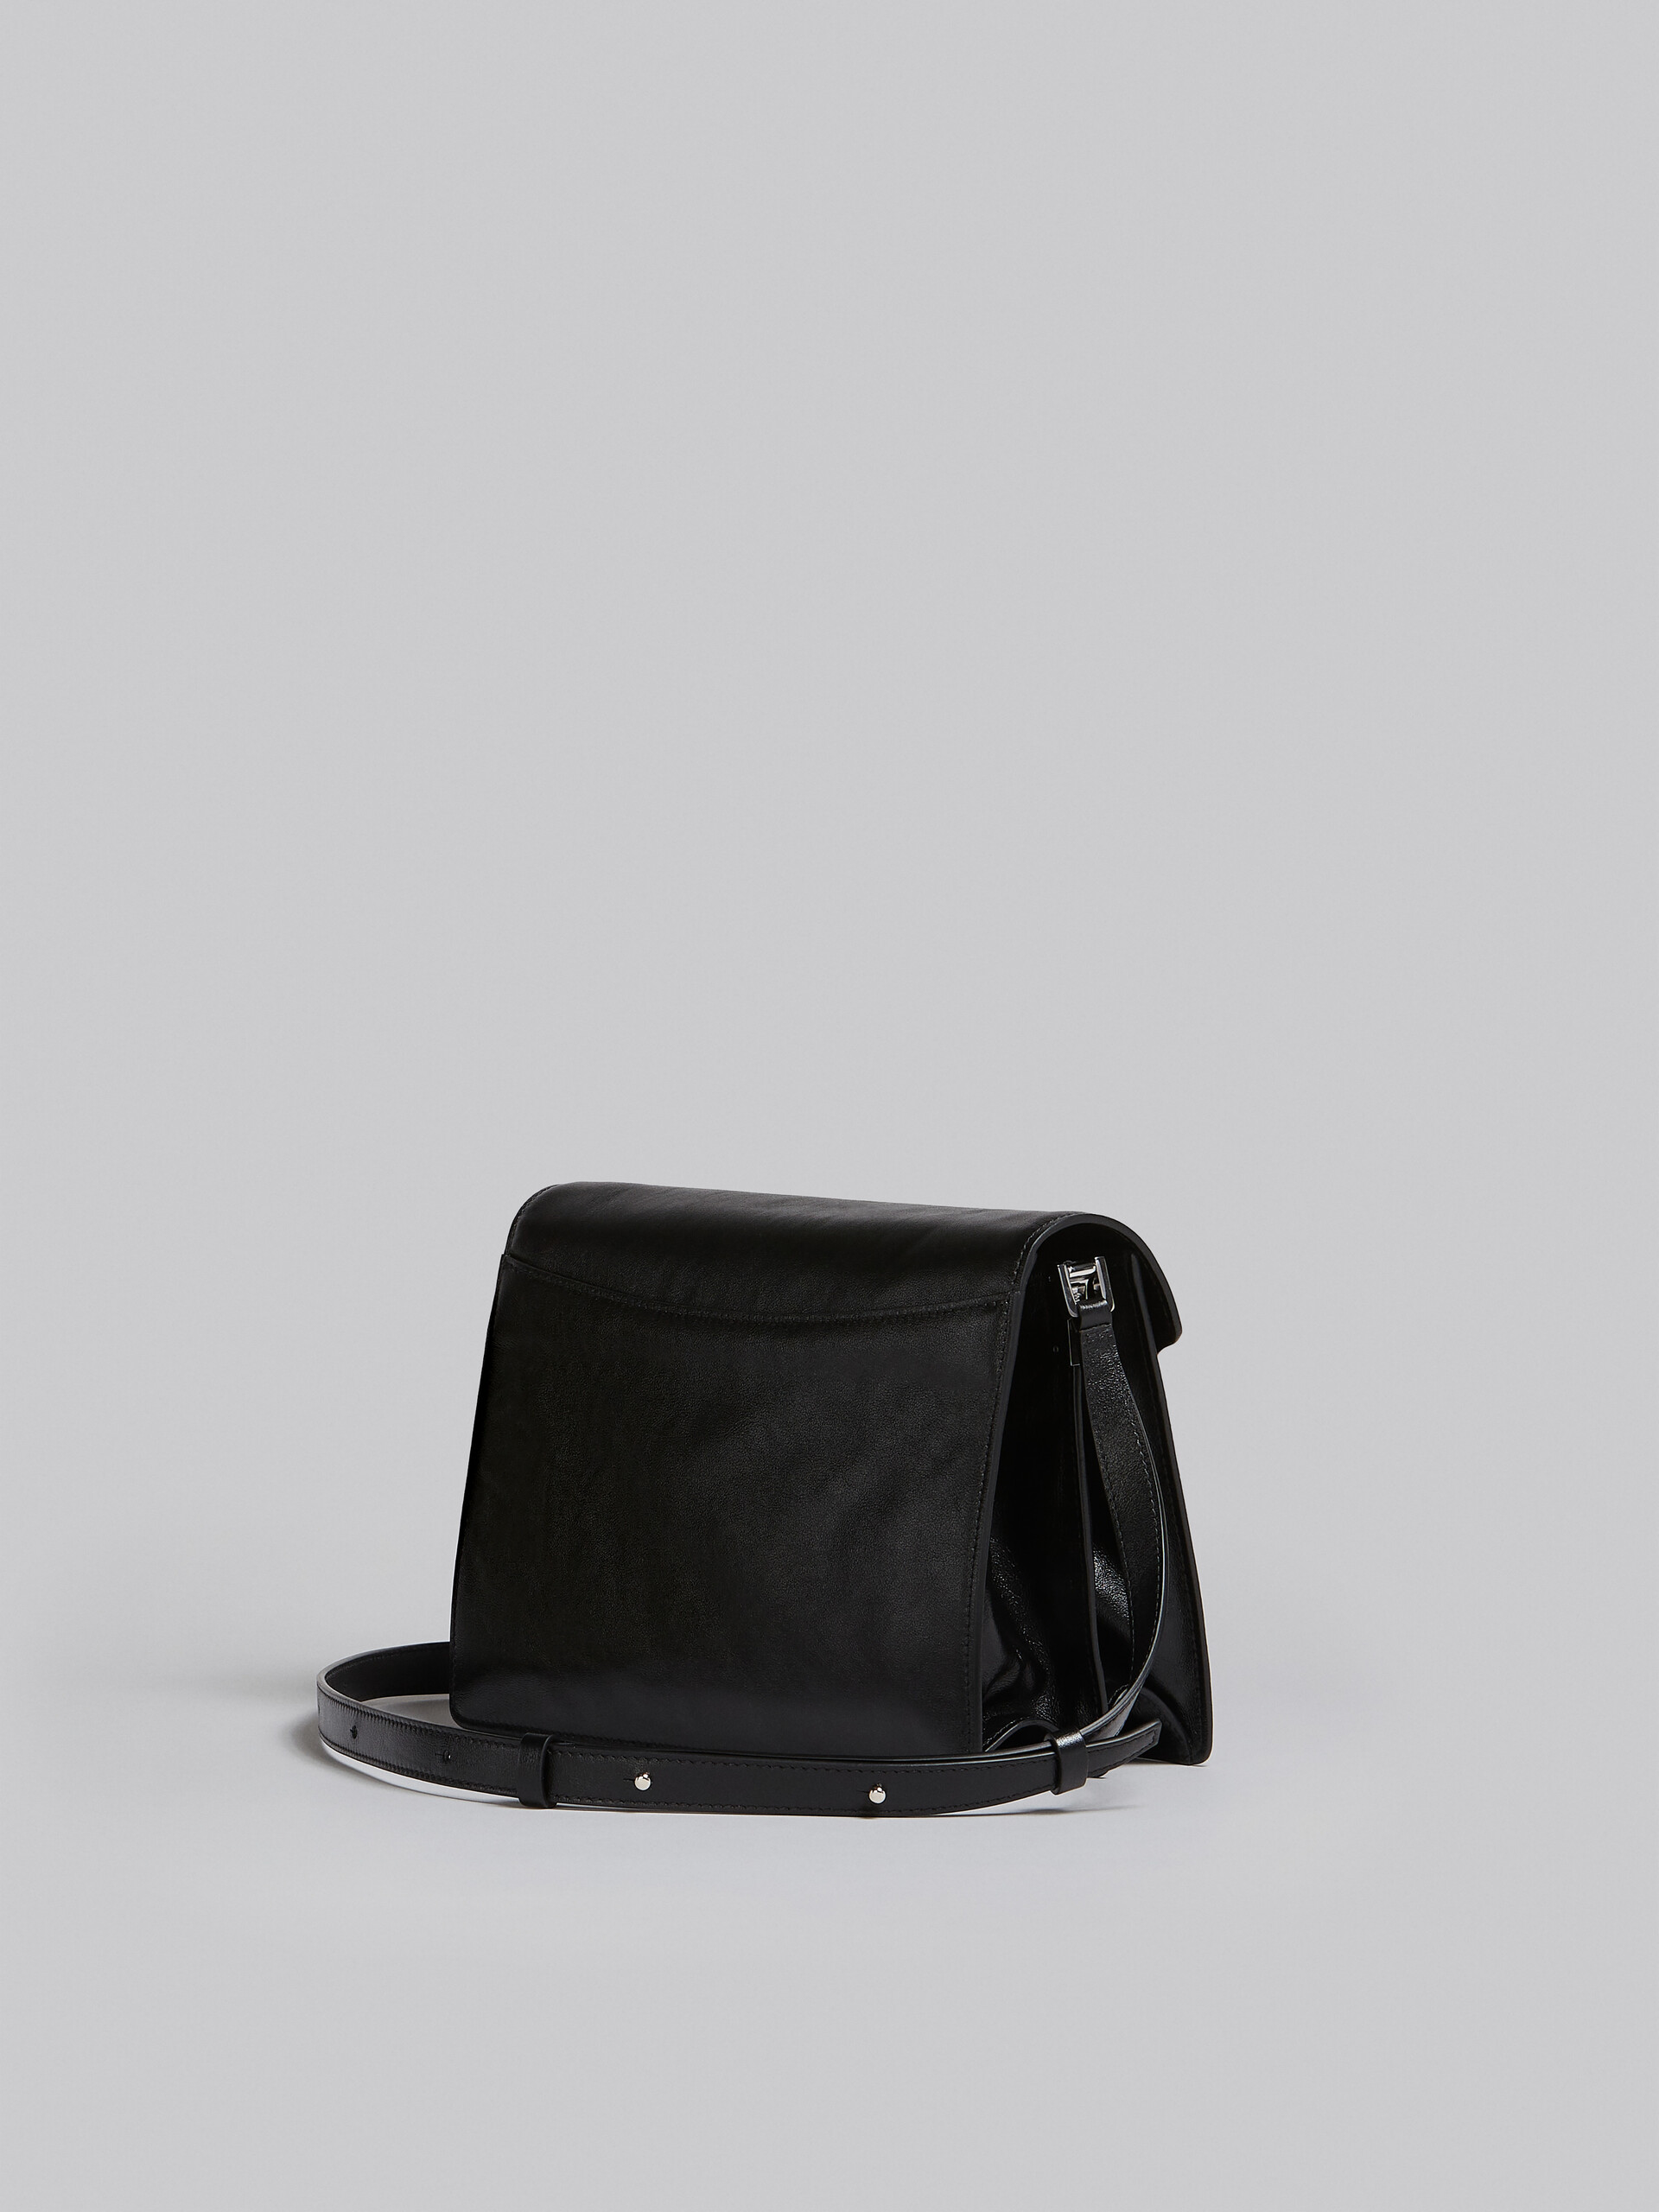 Grand sac Trunk Soft en cuir noir - Sacs portés épaule - Image 3